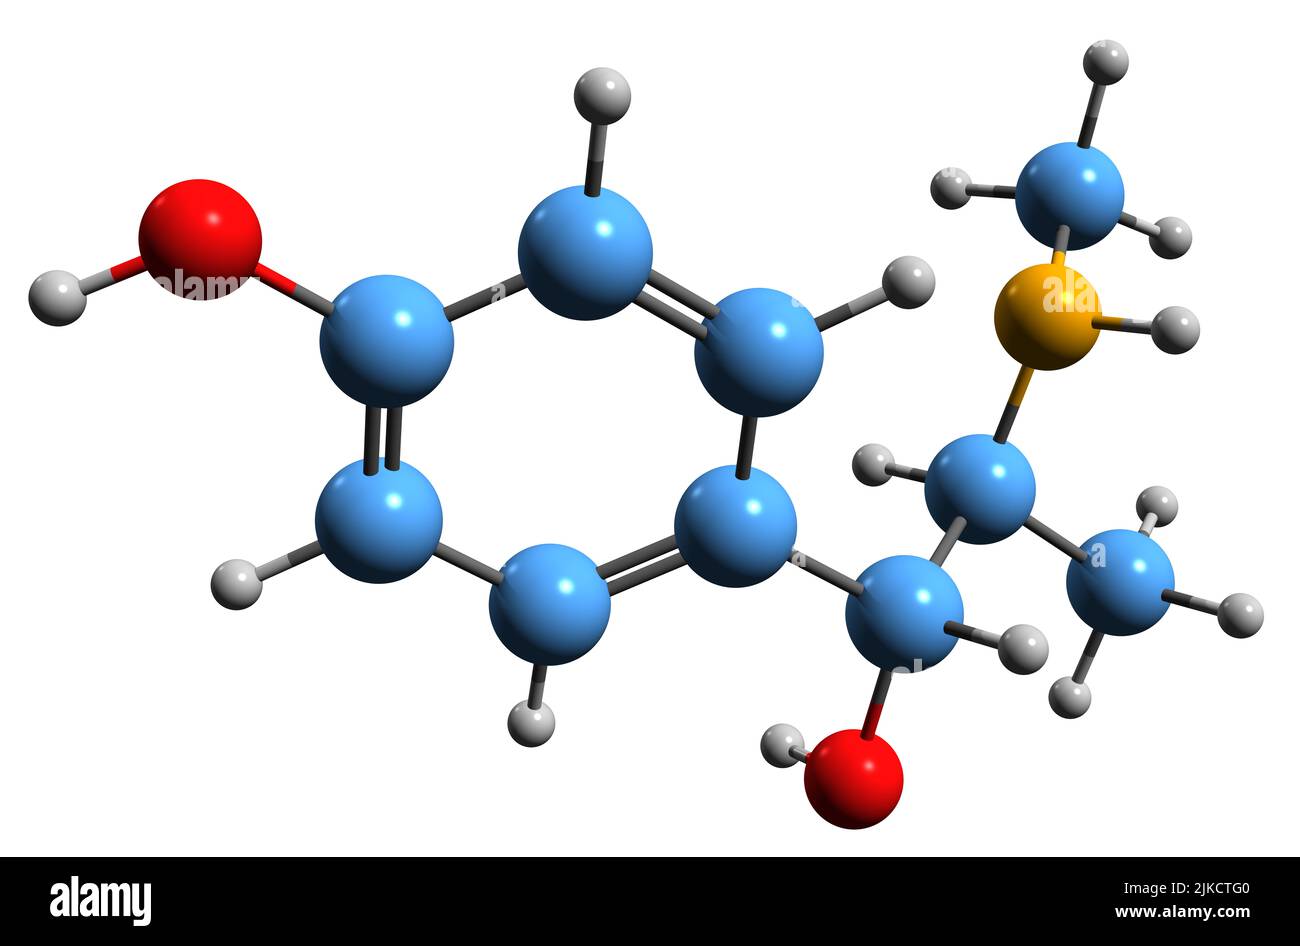 3D Bild der Oxilofrin-Skelettformel - molekularchemische Struktur des Stimulans Methylsynephrin auf weißem Hintergrund isoliert Stockfoto